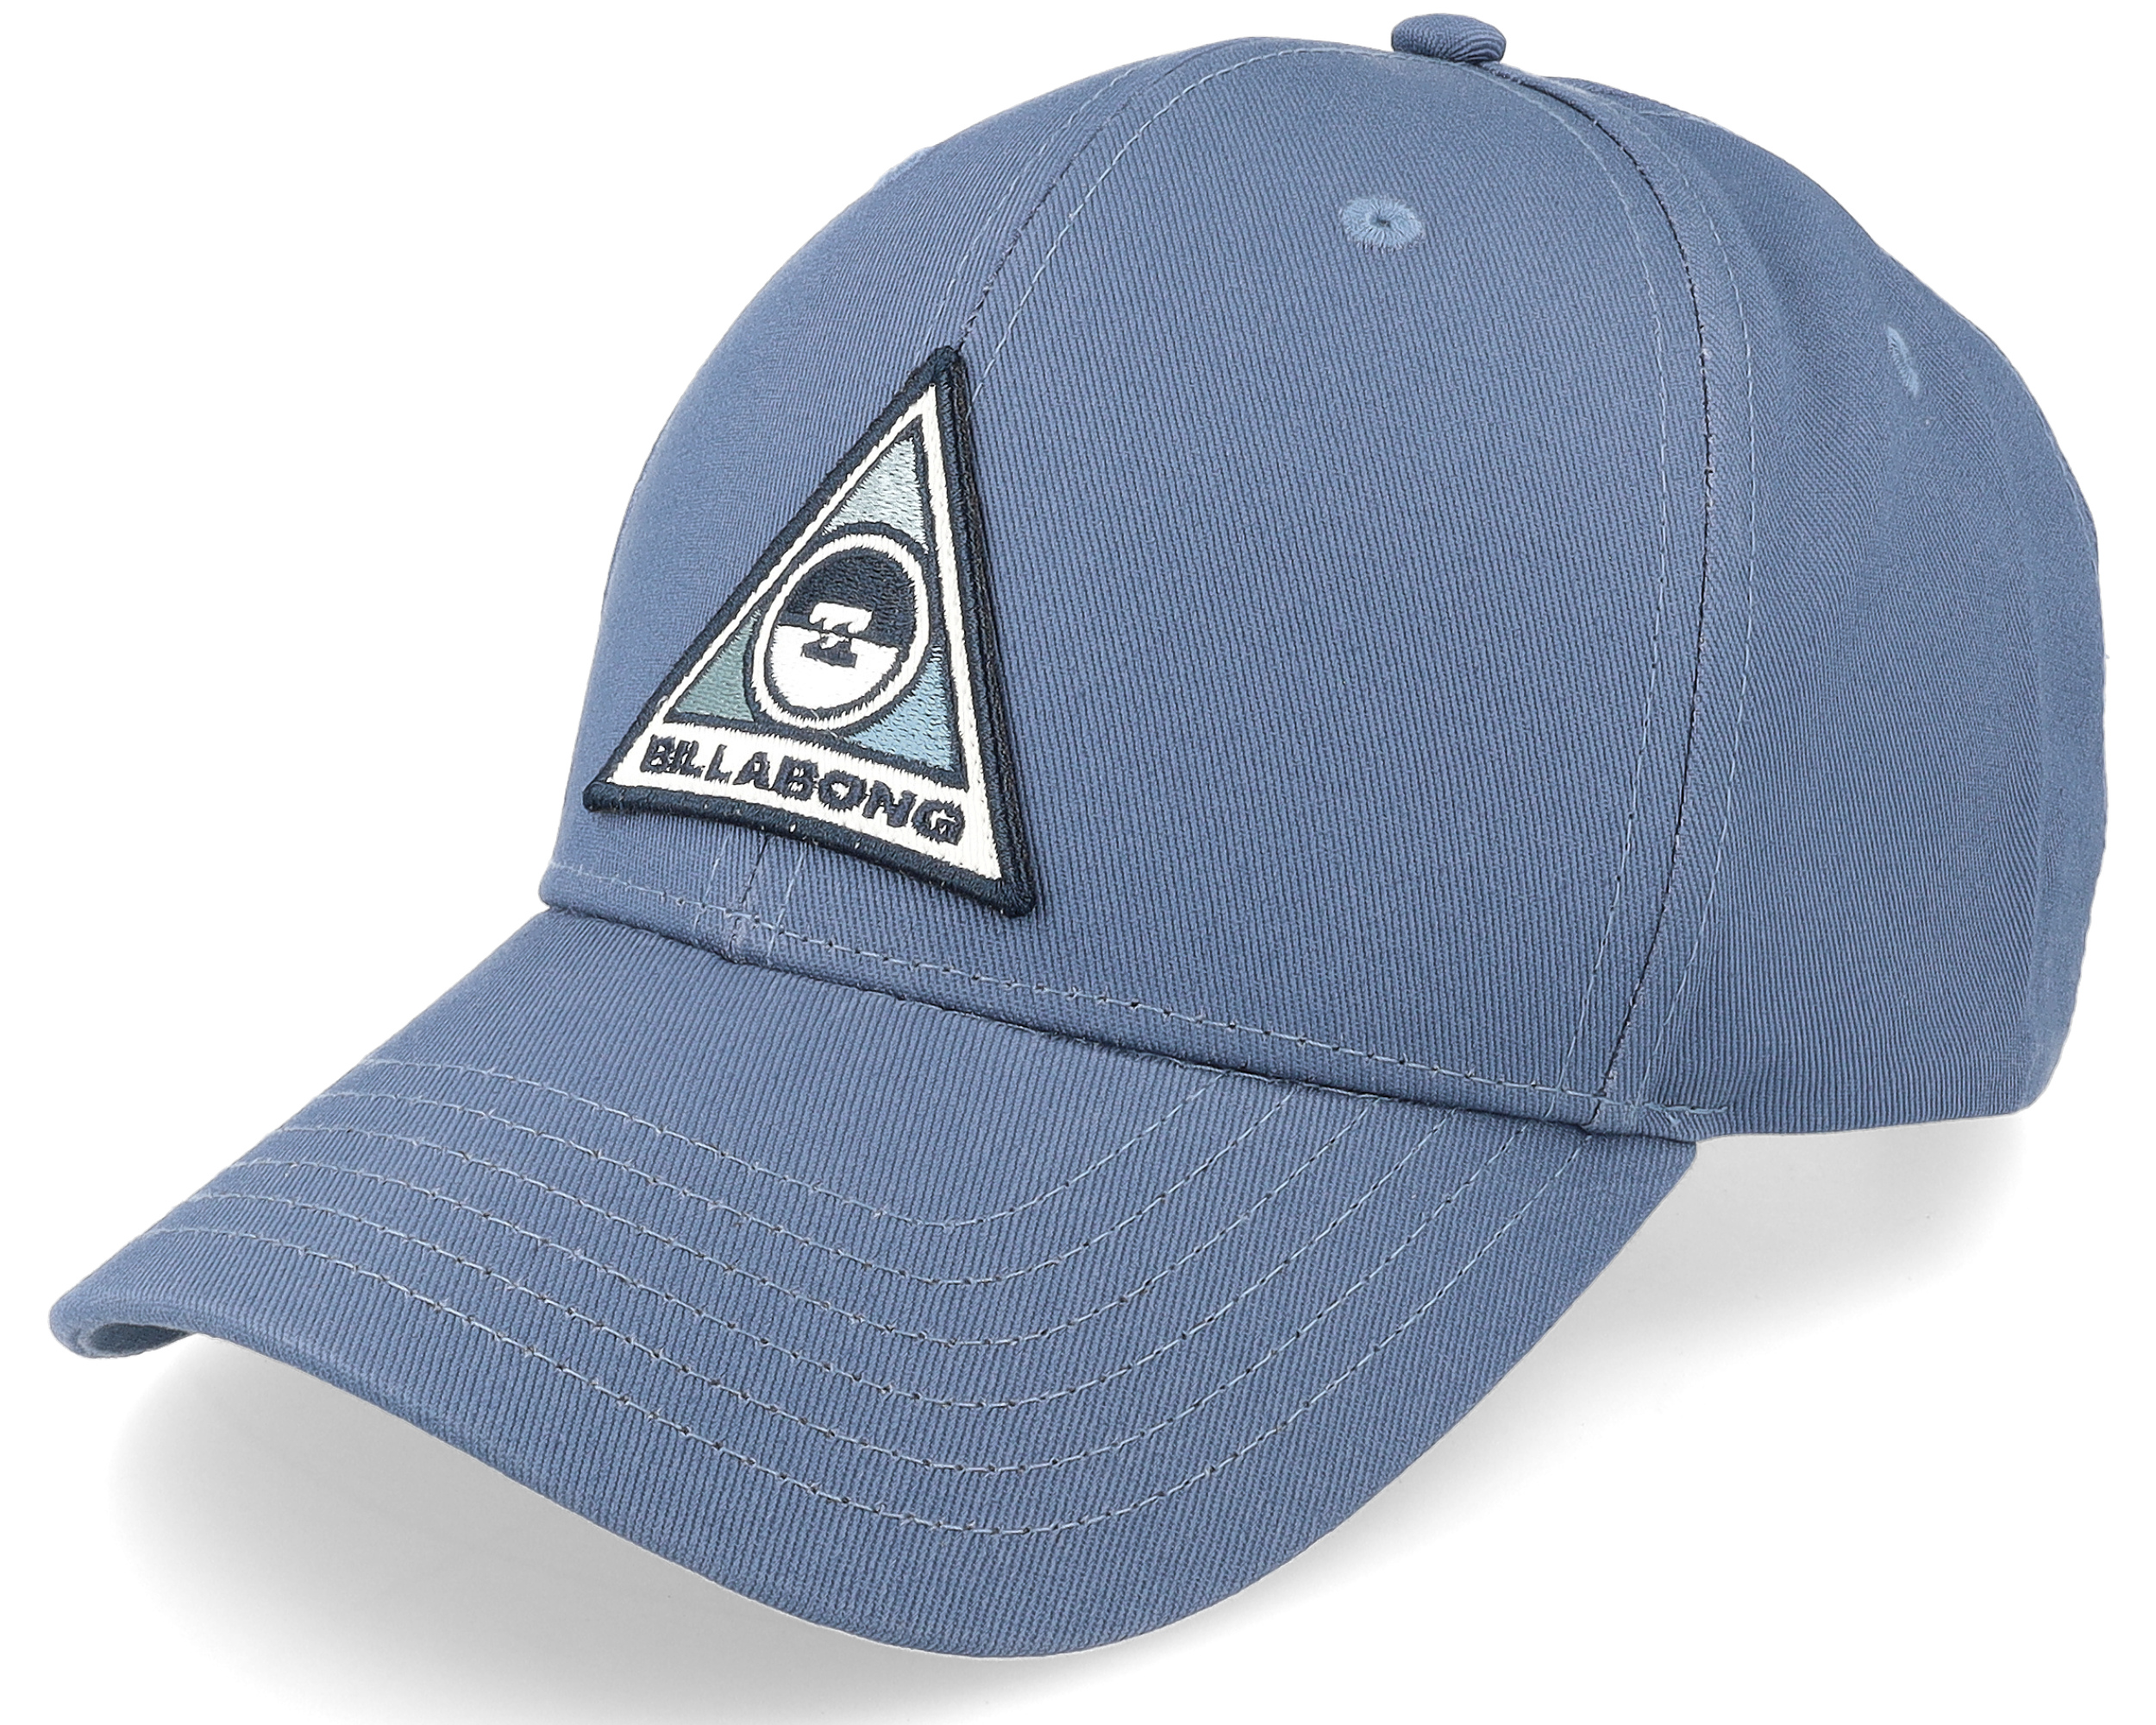 Adjustable Washed cap Blue Billabong - Walled